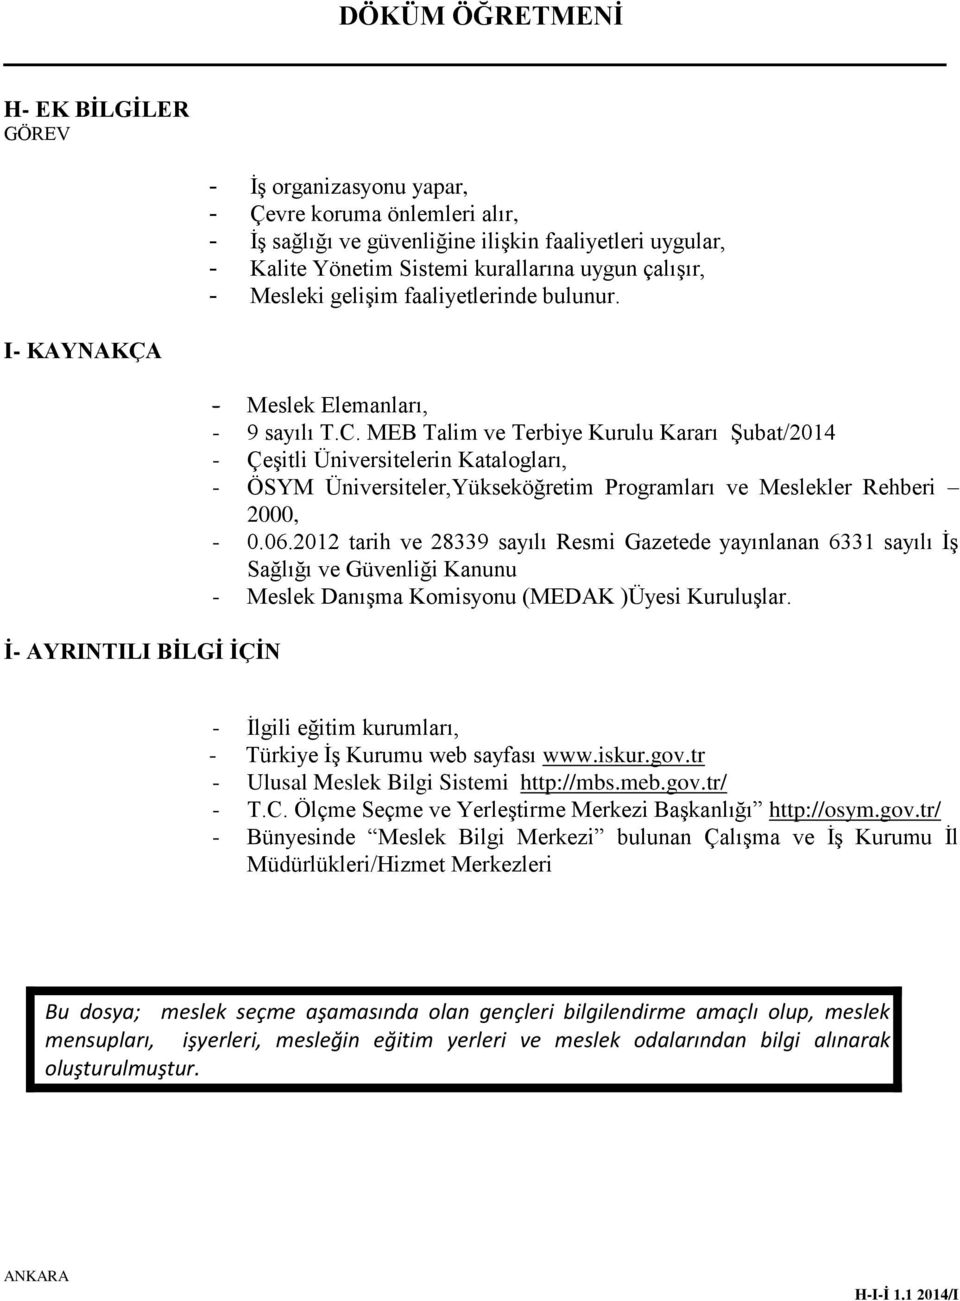 MEB Talim ve Terbiye Kurulu Kararı Şubat/2014 - Çeşitli Üniversitelerin Katalogları, - ÖSYM Üniversiteler,Yükseköğretim Programları ve Meslekler Rehberi 2000, - 0.06.